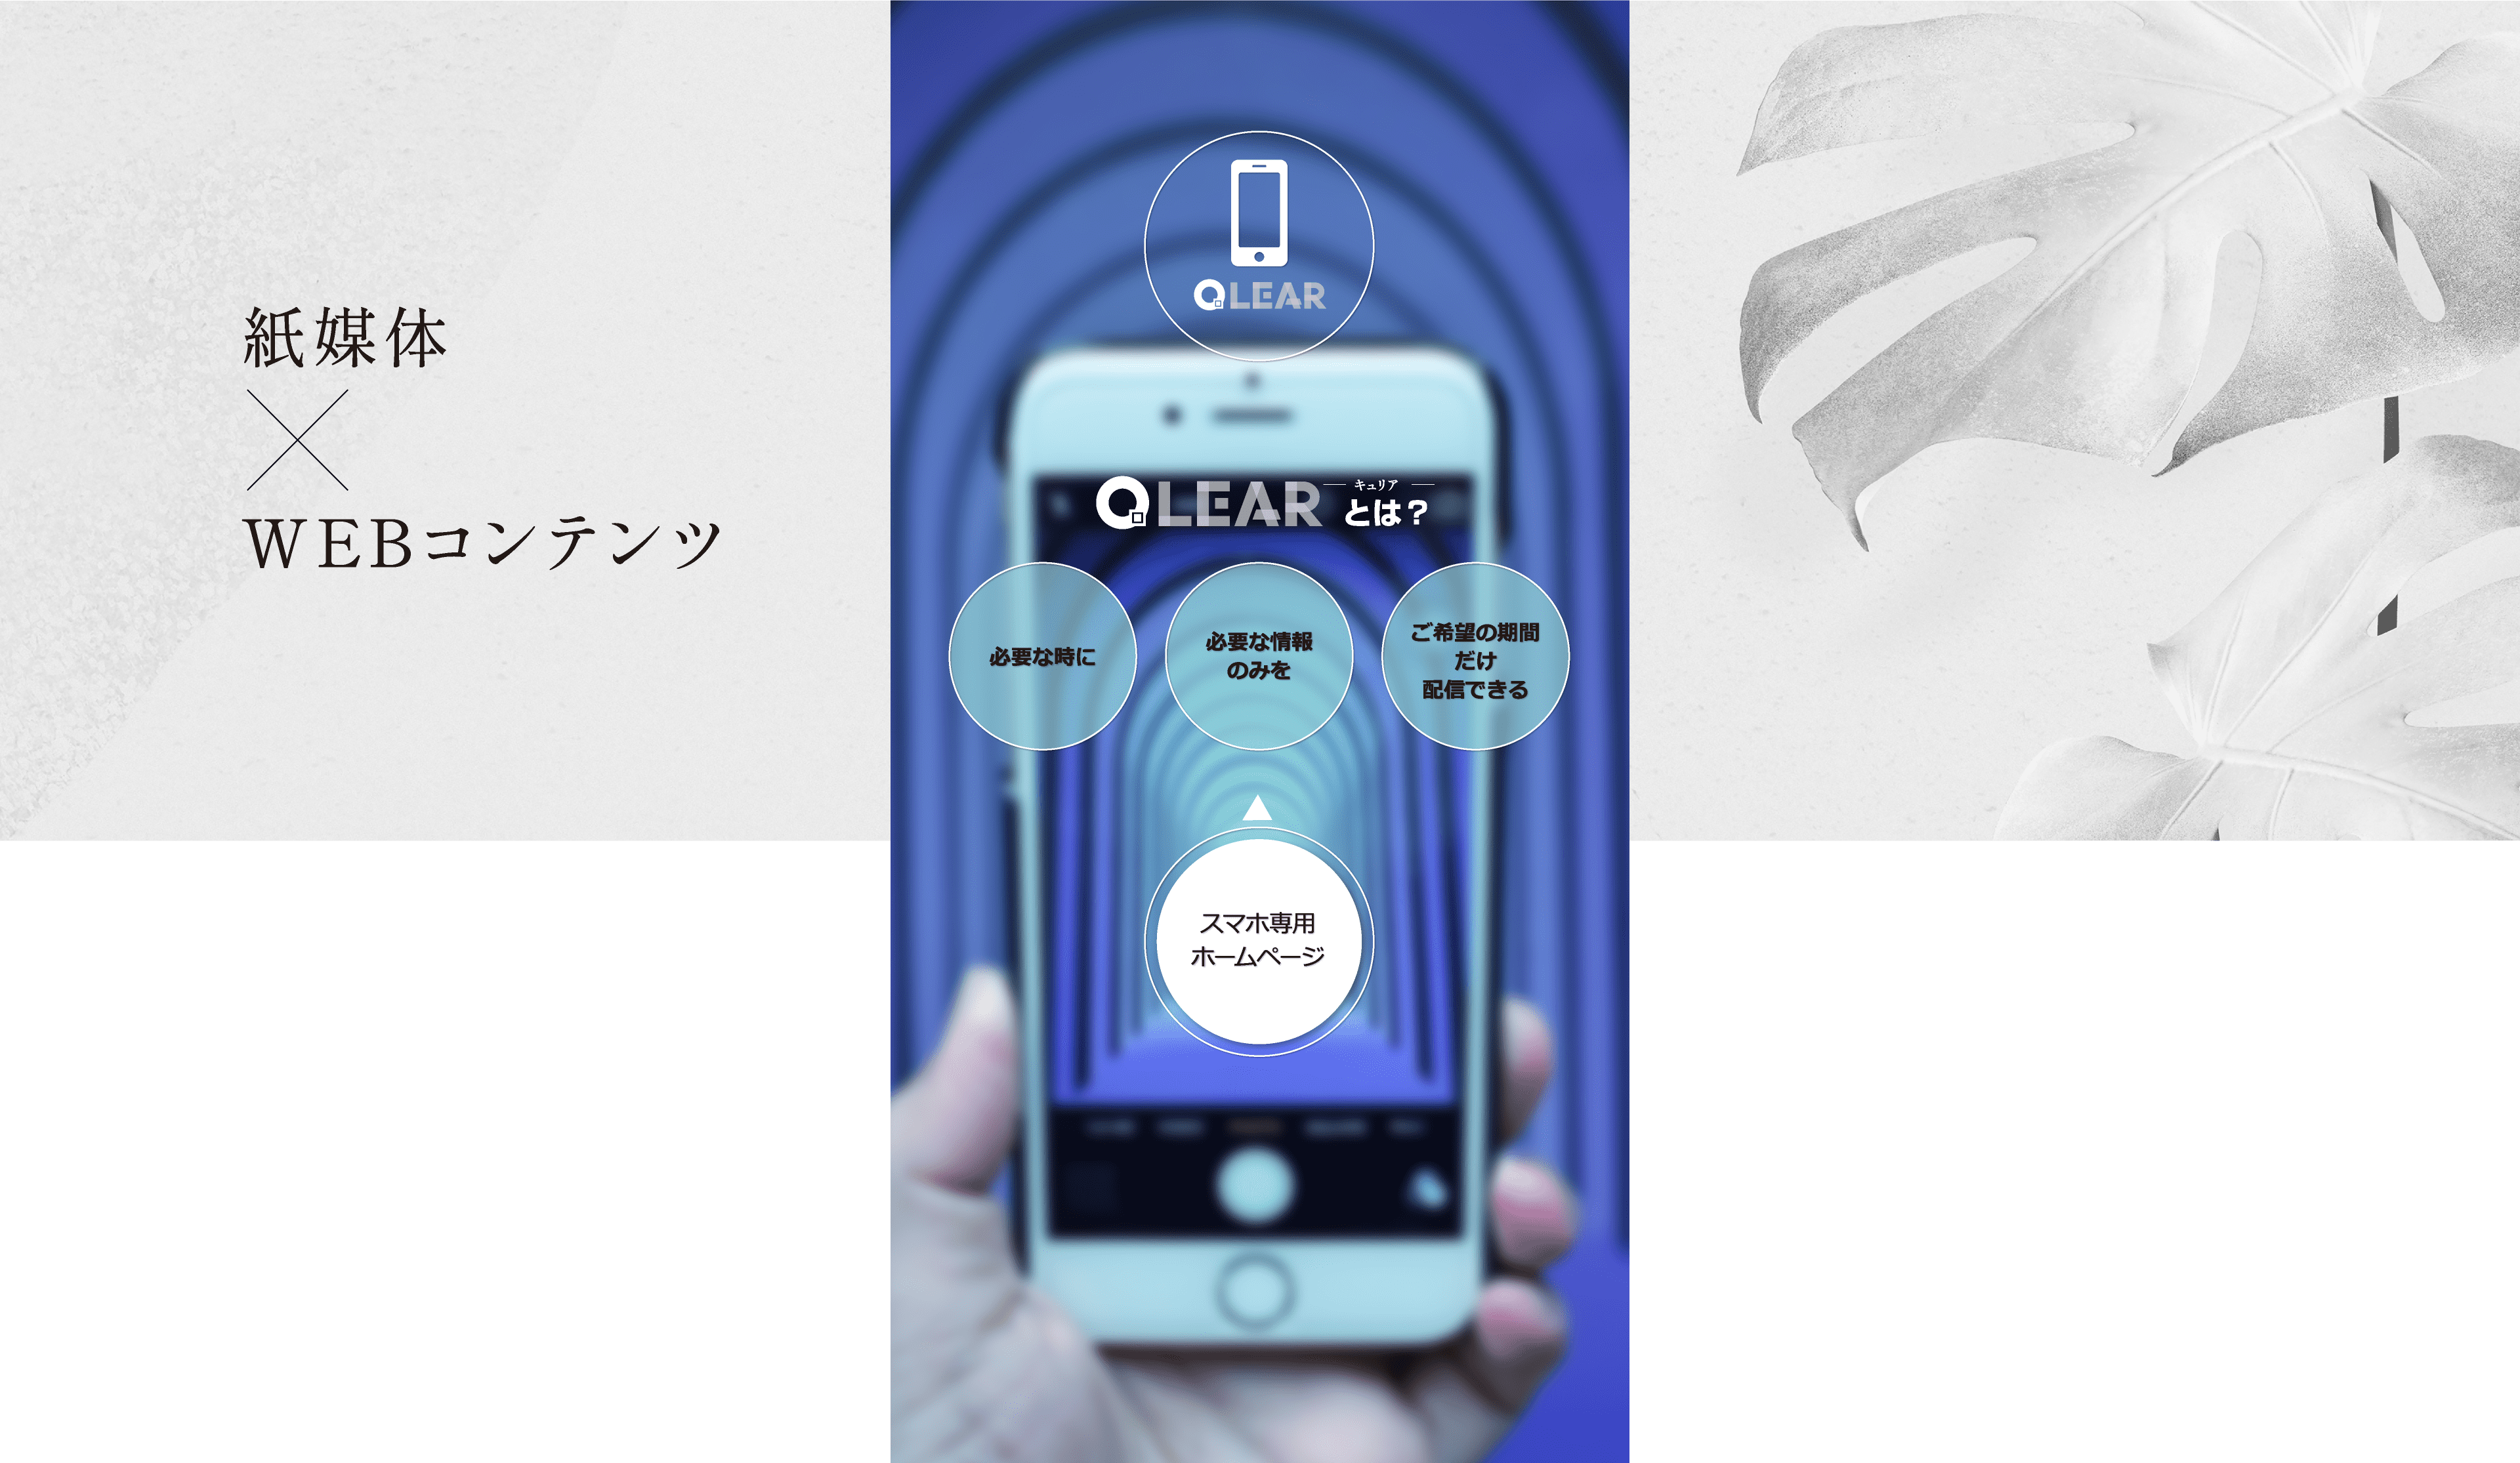 紙媒体×WEBコンテンツ　Next Generation QR by QLEAR